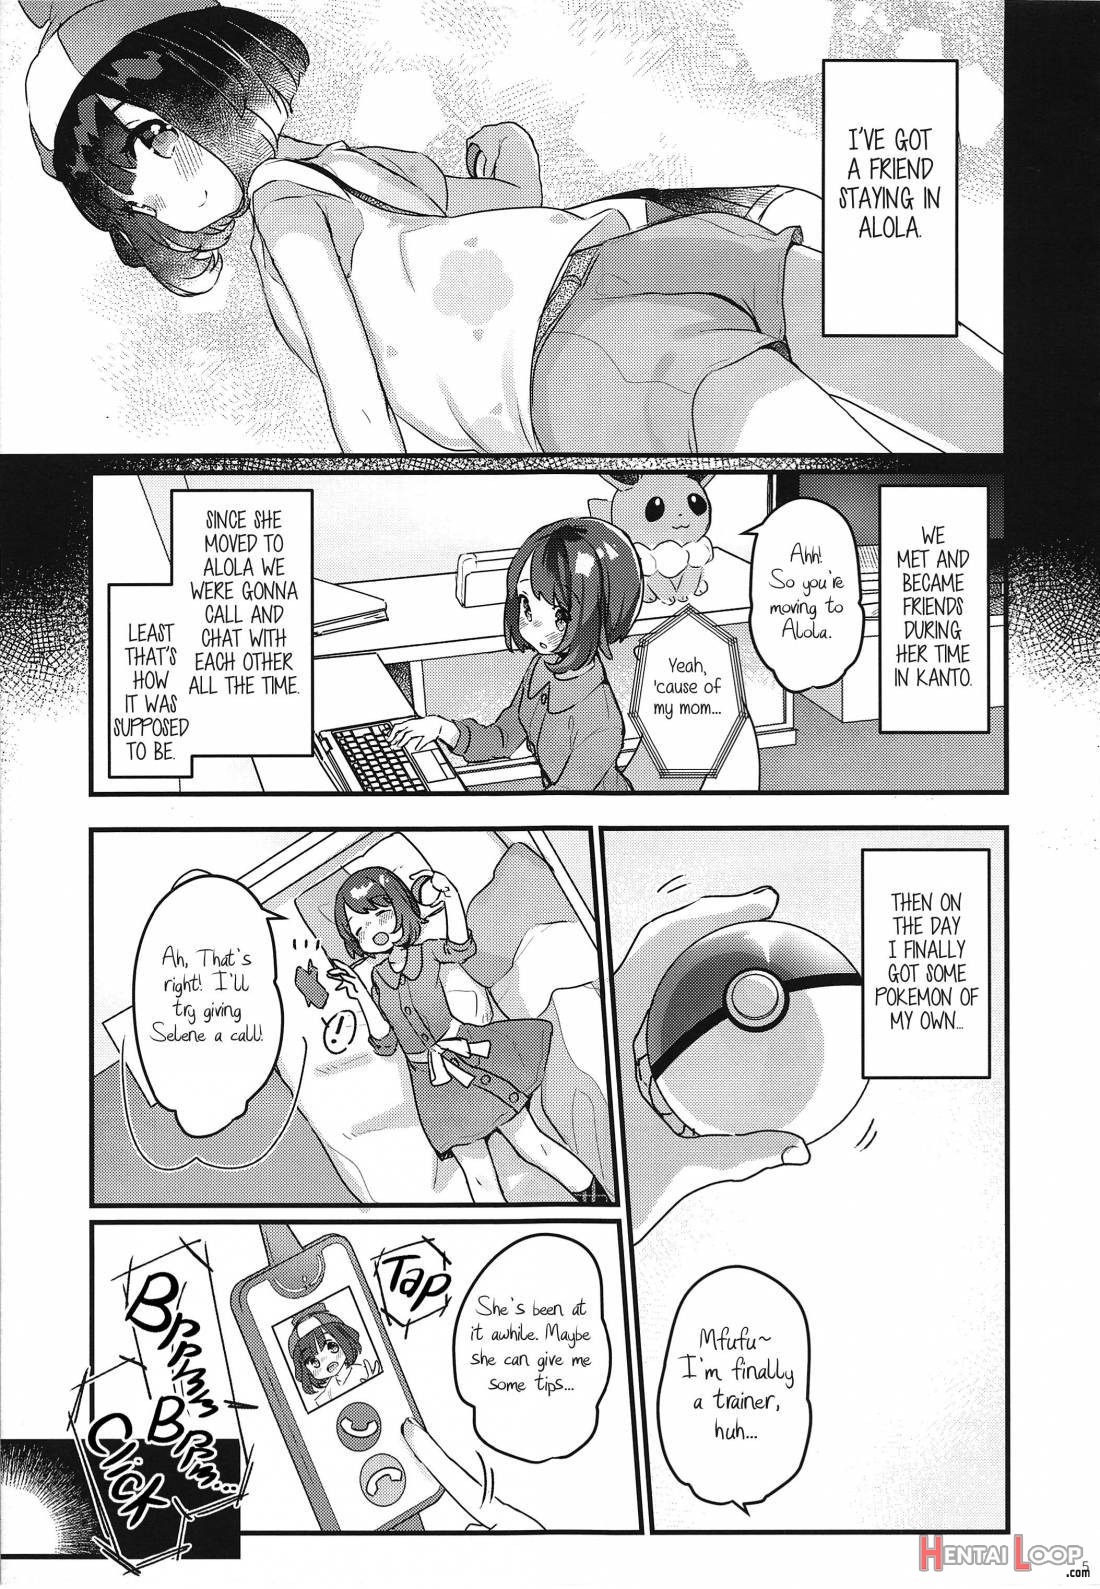 "datte Fuku, Taka Iindamon" page 2